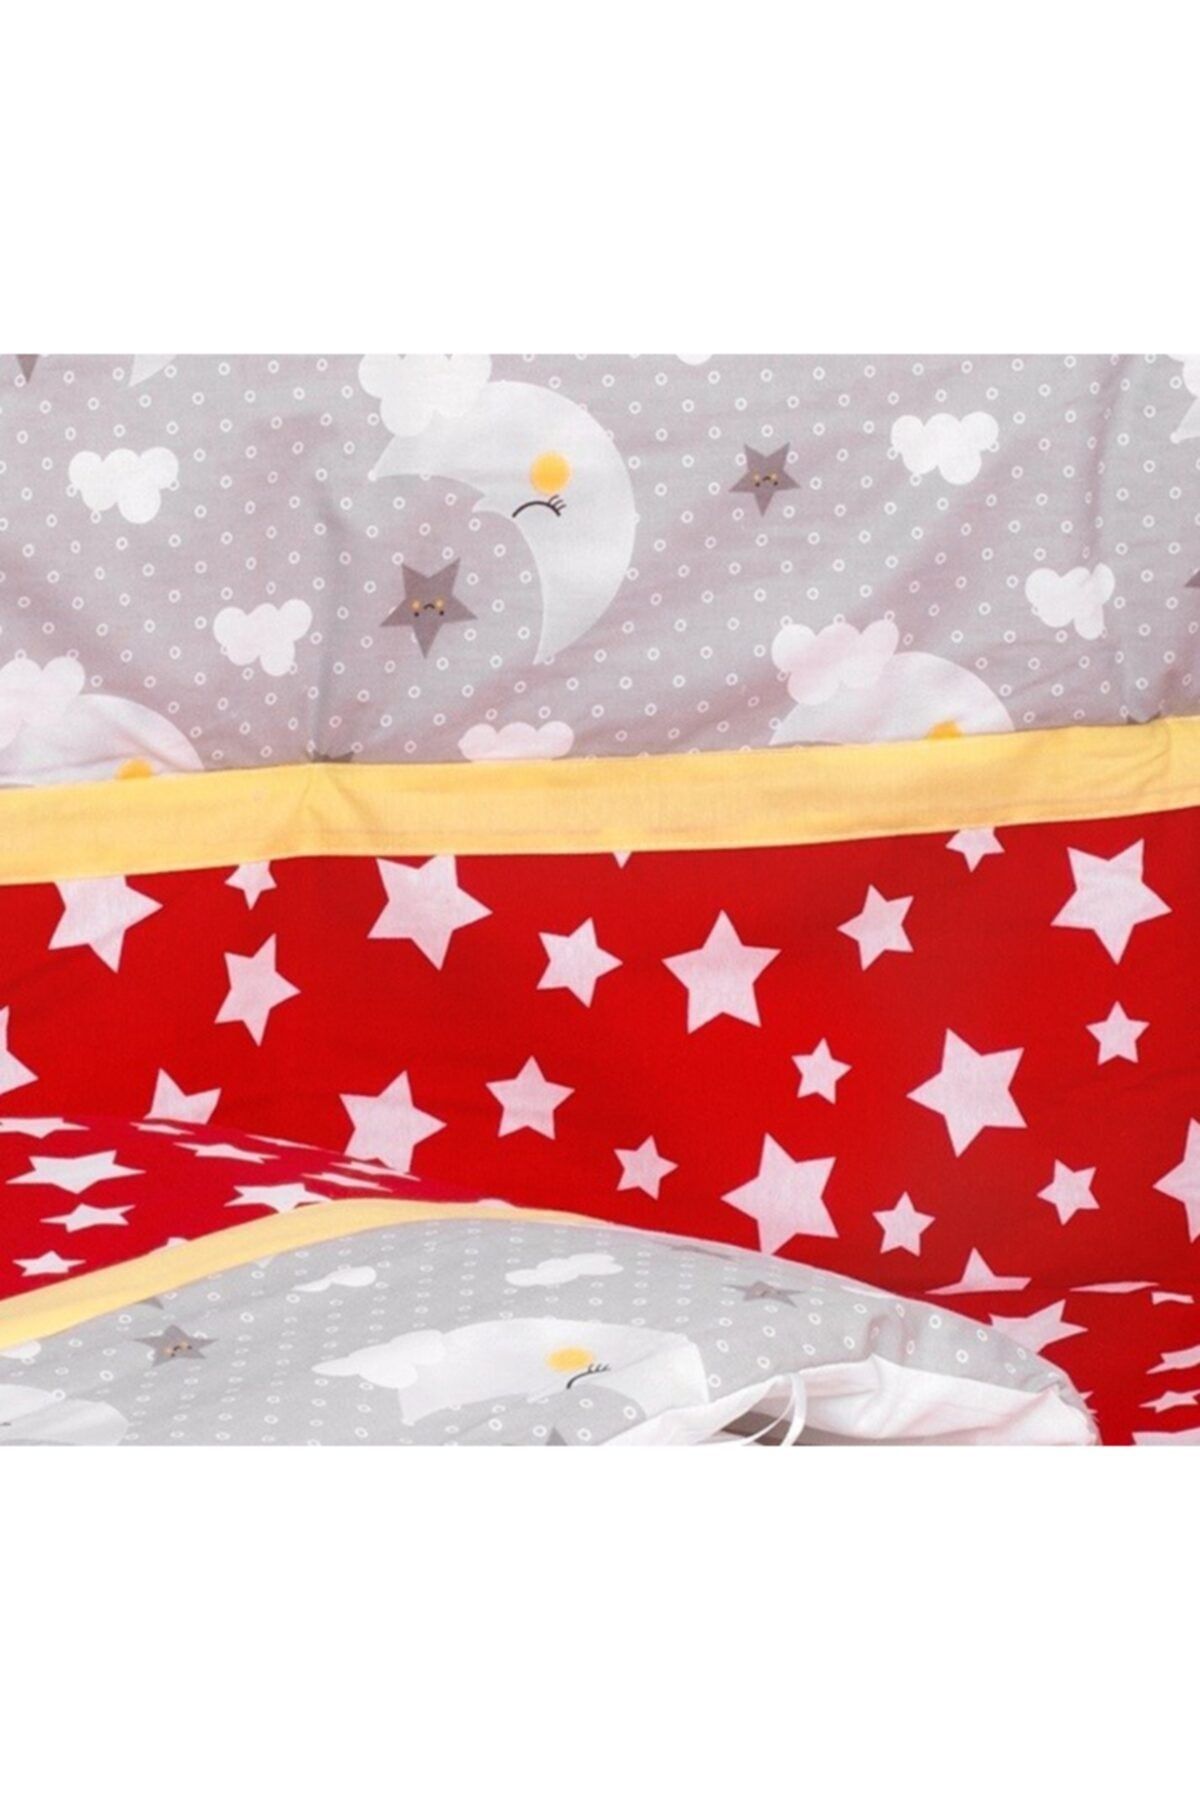 Sluupy Yıldız Ay Figürlü Bebek Uyku Seti 80x130 (12 Parça)